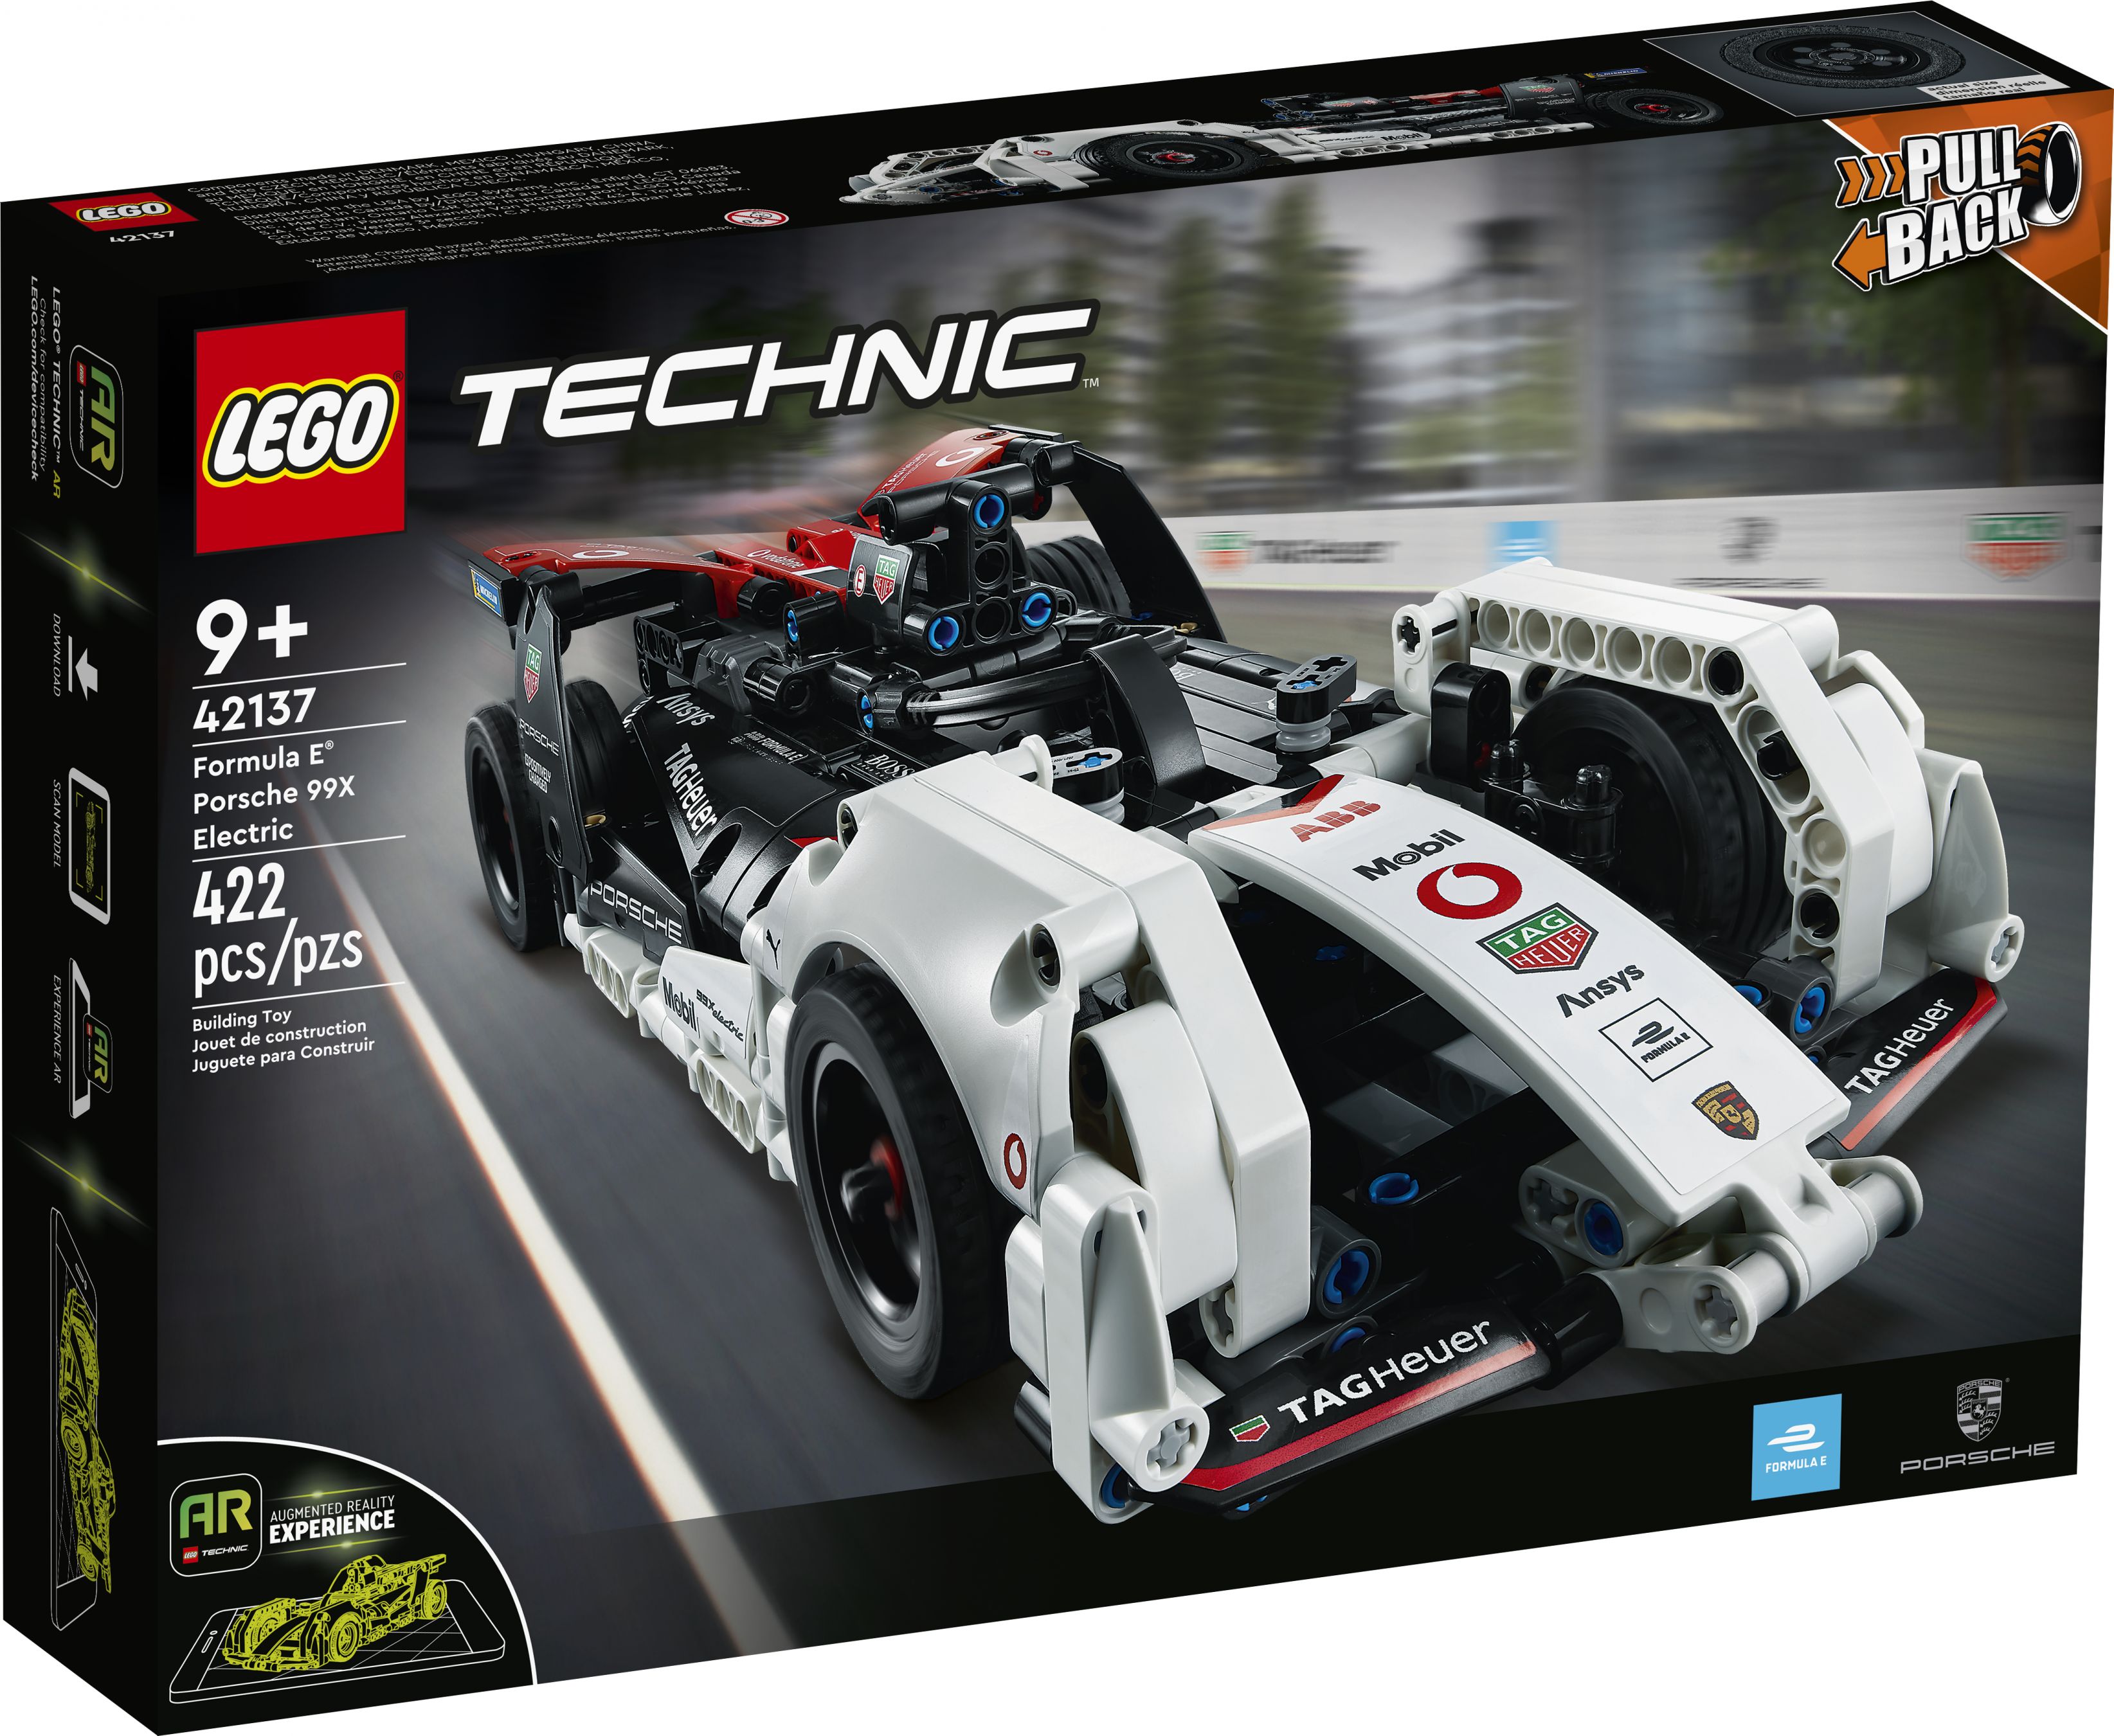 LEGO Technic 42137 Formula E™ Porsche 99X Electric LEGO_42137_Box1_v39.jpg